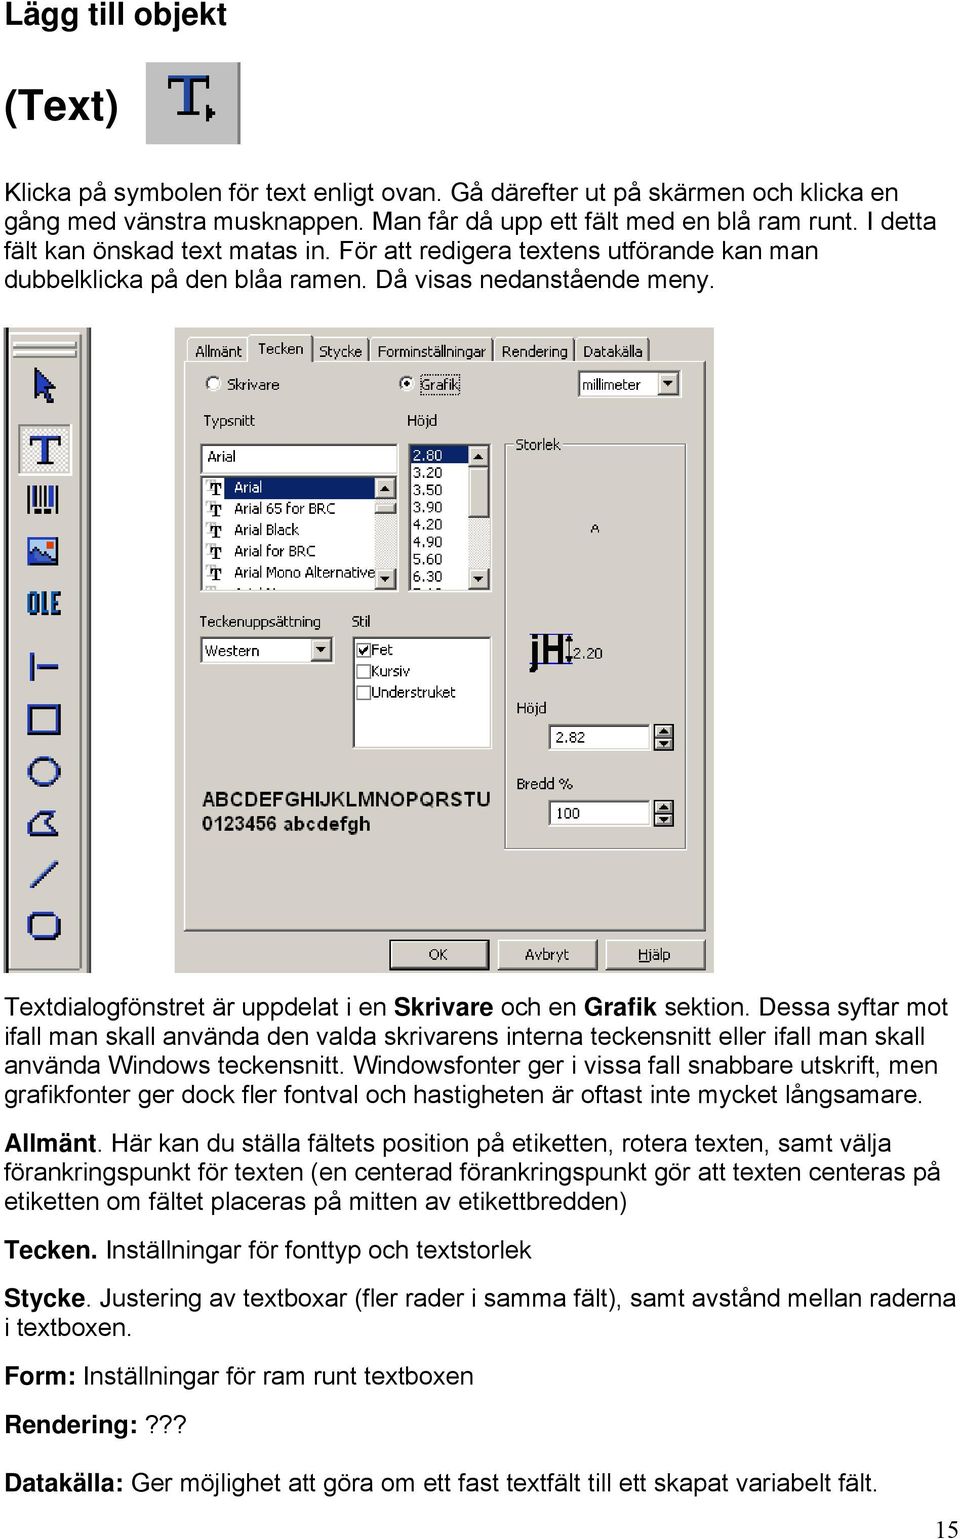 Textdialogfönstret är uppdelat i en Skrivare och en Grafik sektion. Dessa syftar mot ifall man skall använda den valda skrivarens interna teckensnitt eller ifall man skall använda Windows teckensnitt.